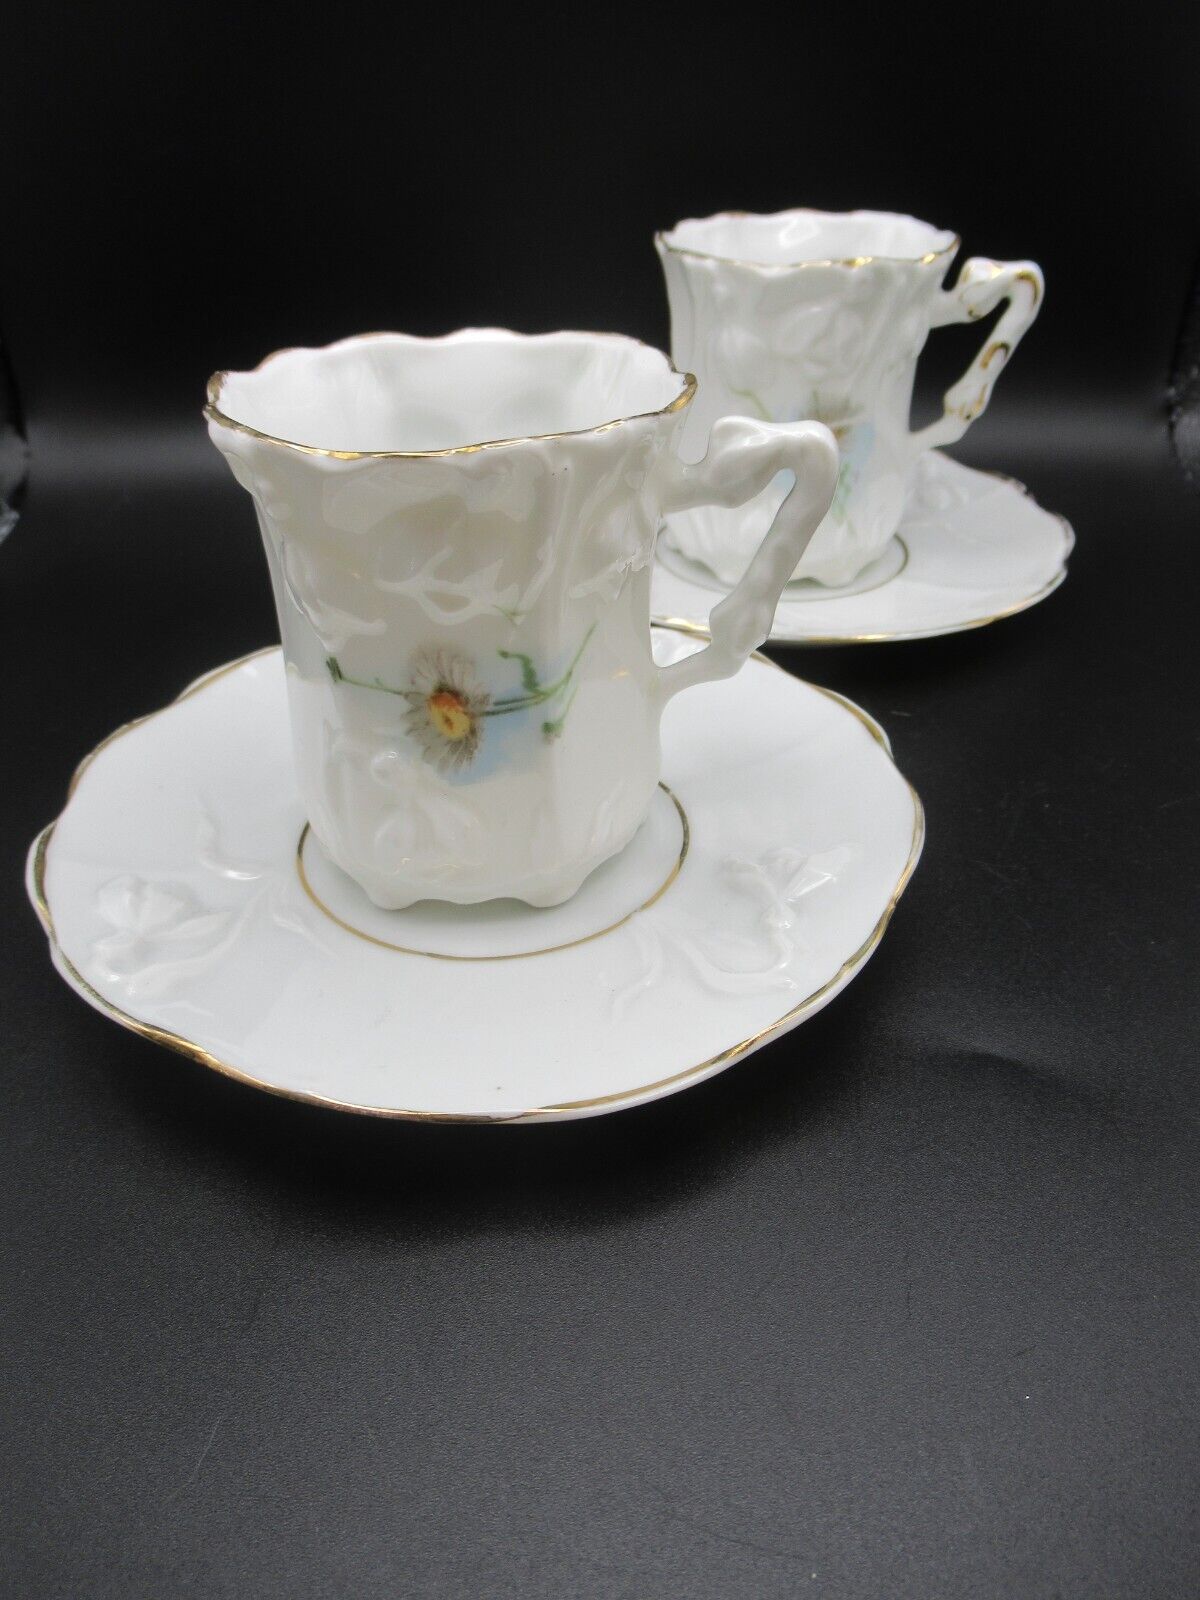 Antique delicate Austrian porcelain 2 tea cups saucers daisies scallop edge